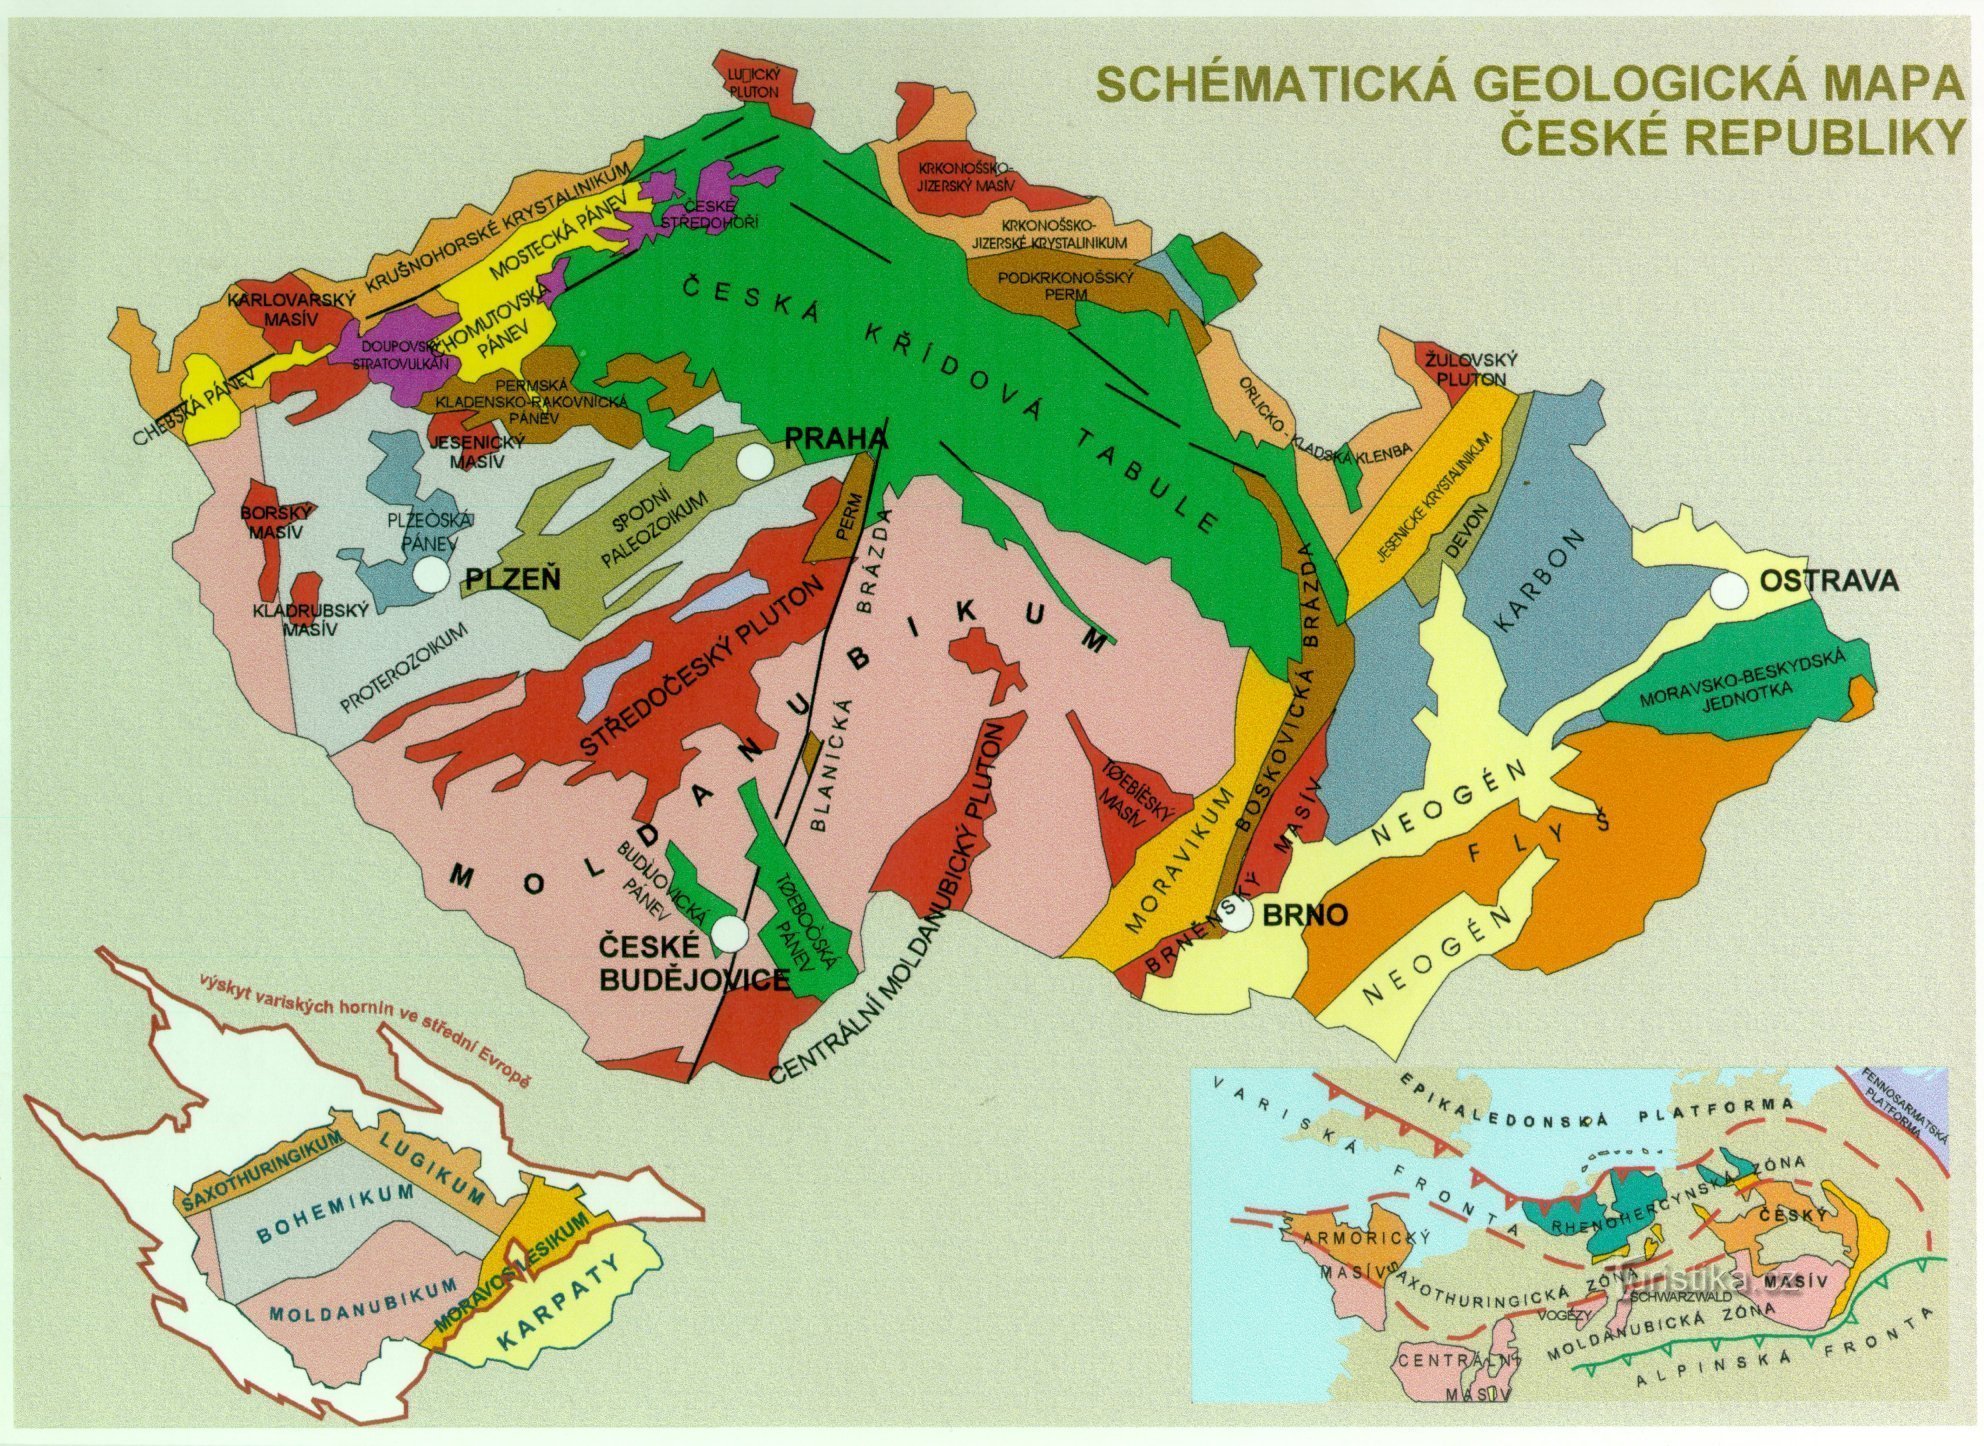 bản đồ địa chất của Cộng hòa Séc - hình ảnh bổ sung cho văn bản (từ https: //www.ig.